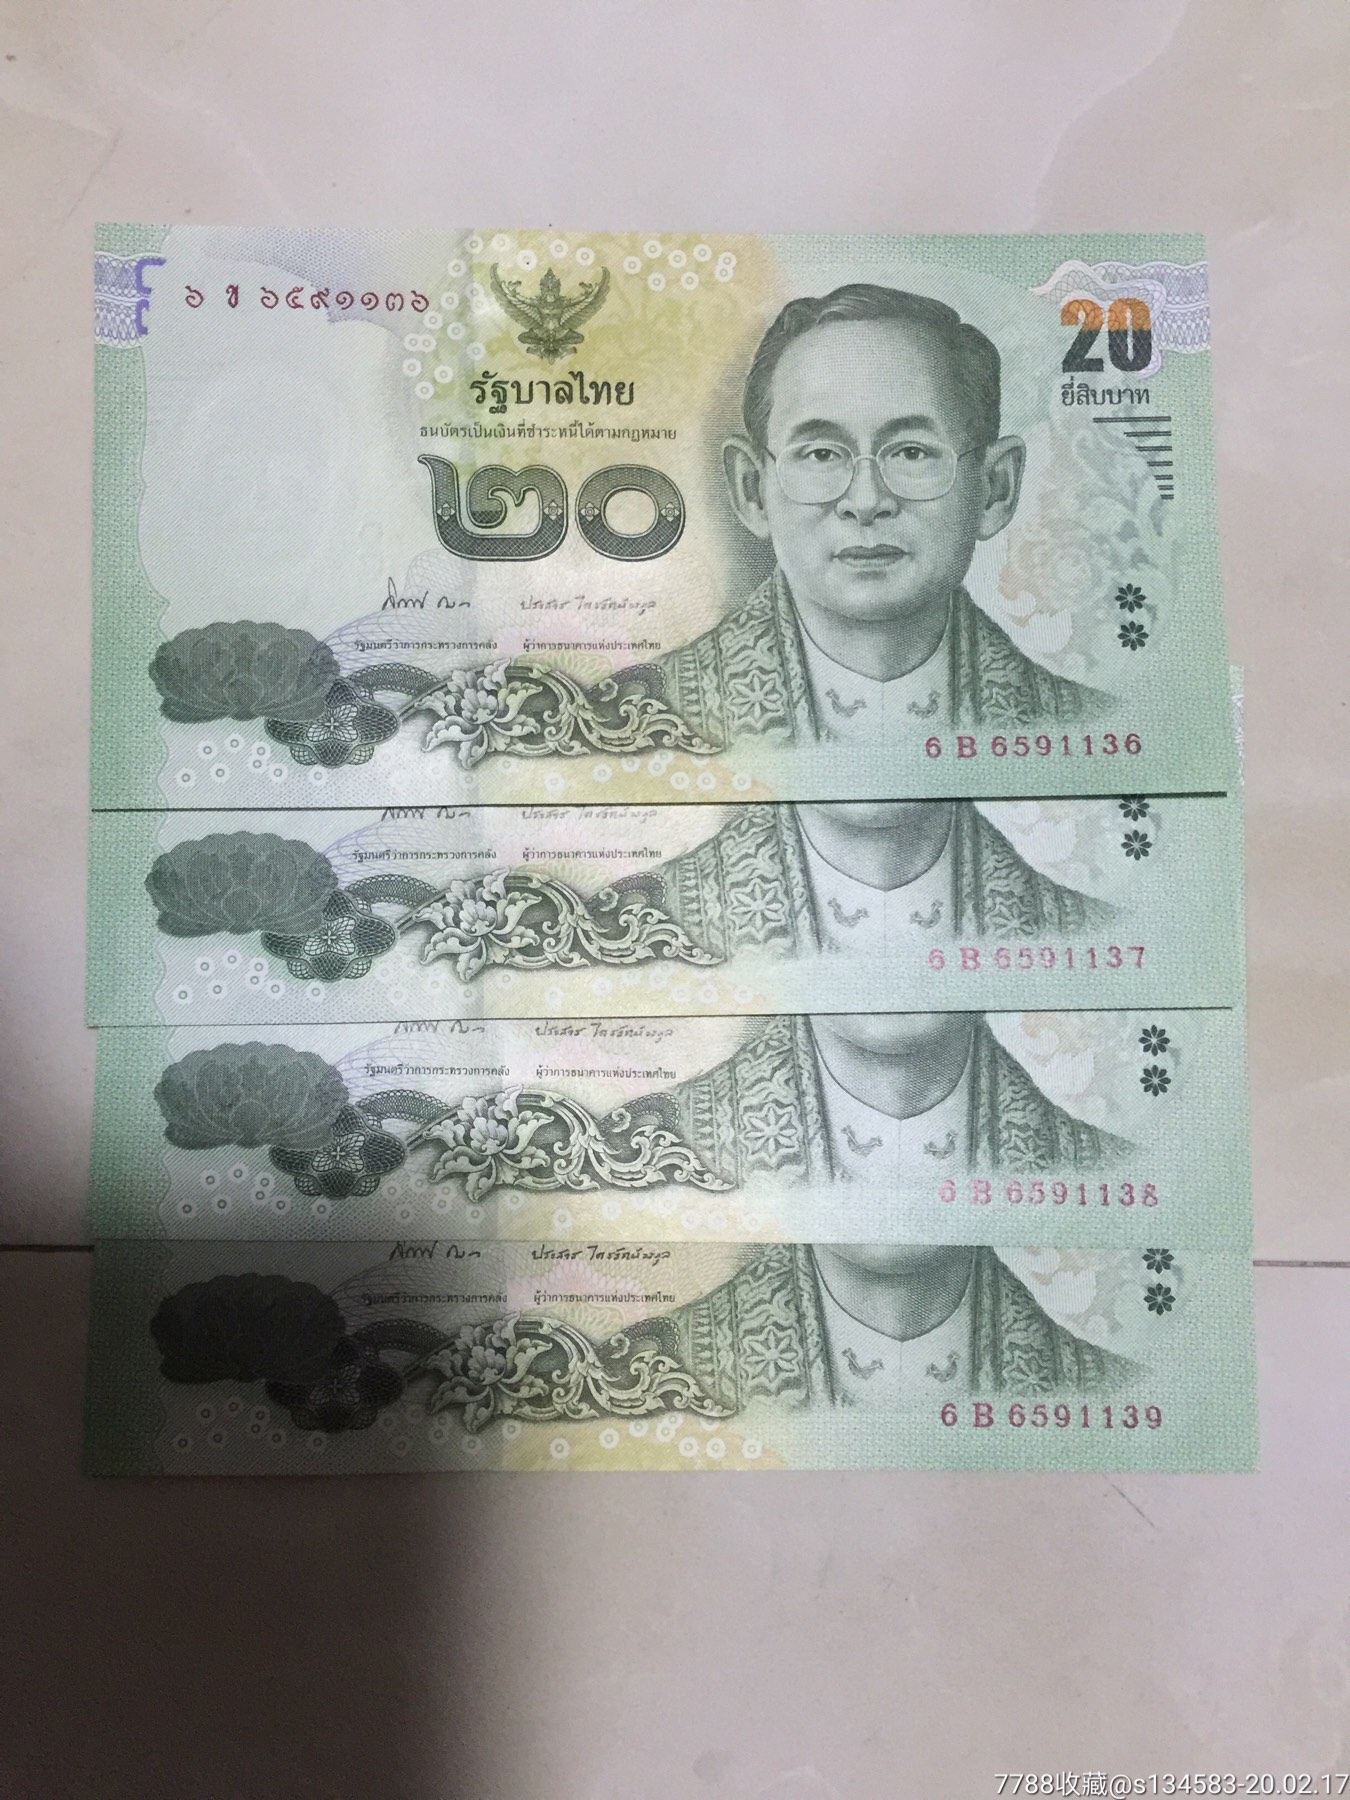 2013年版泰国纸币,4张连号一起卖了